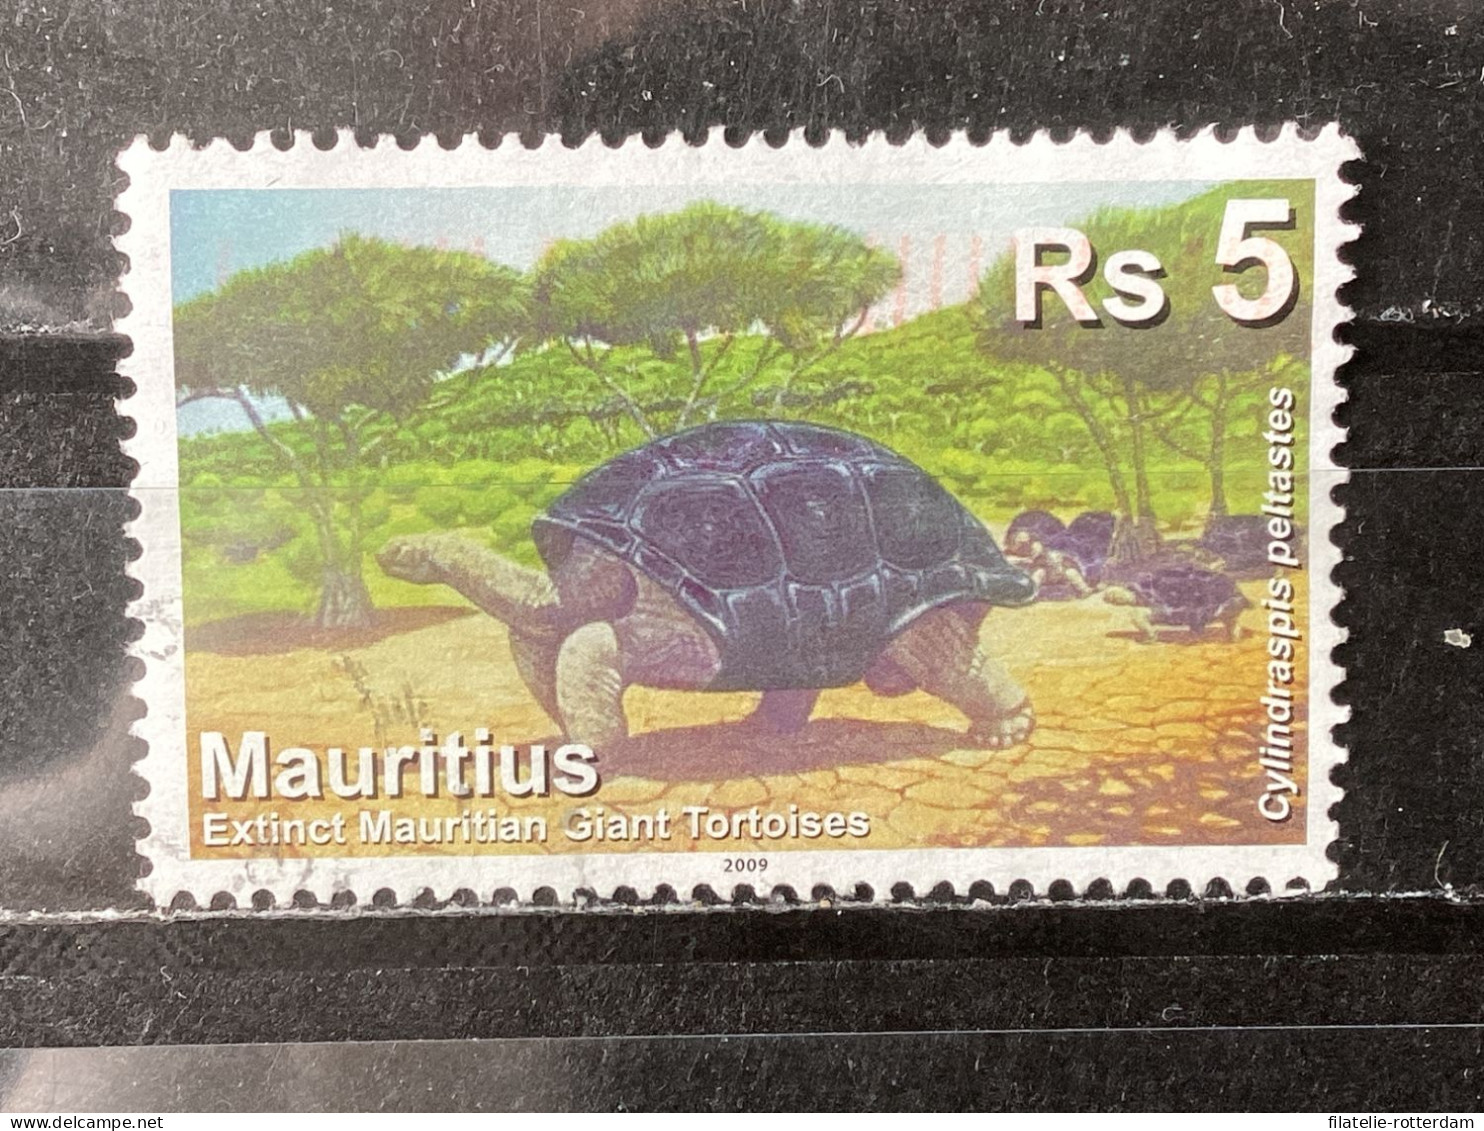 Mauritius - Turtles (5) 2009 - Mauritius (1968-...)